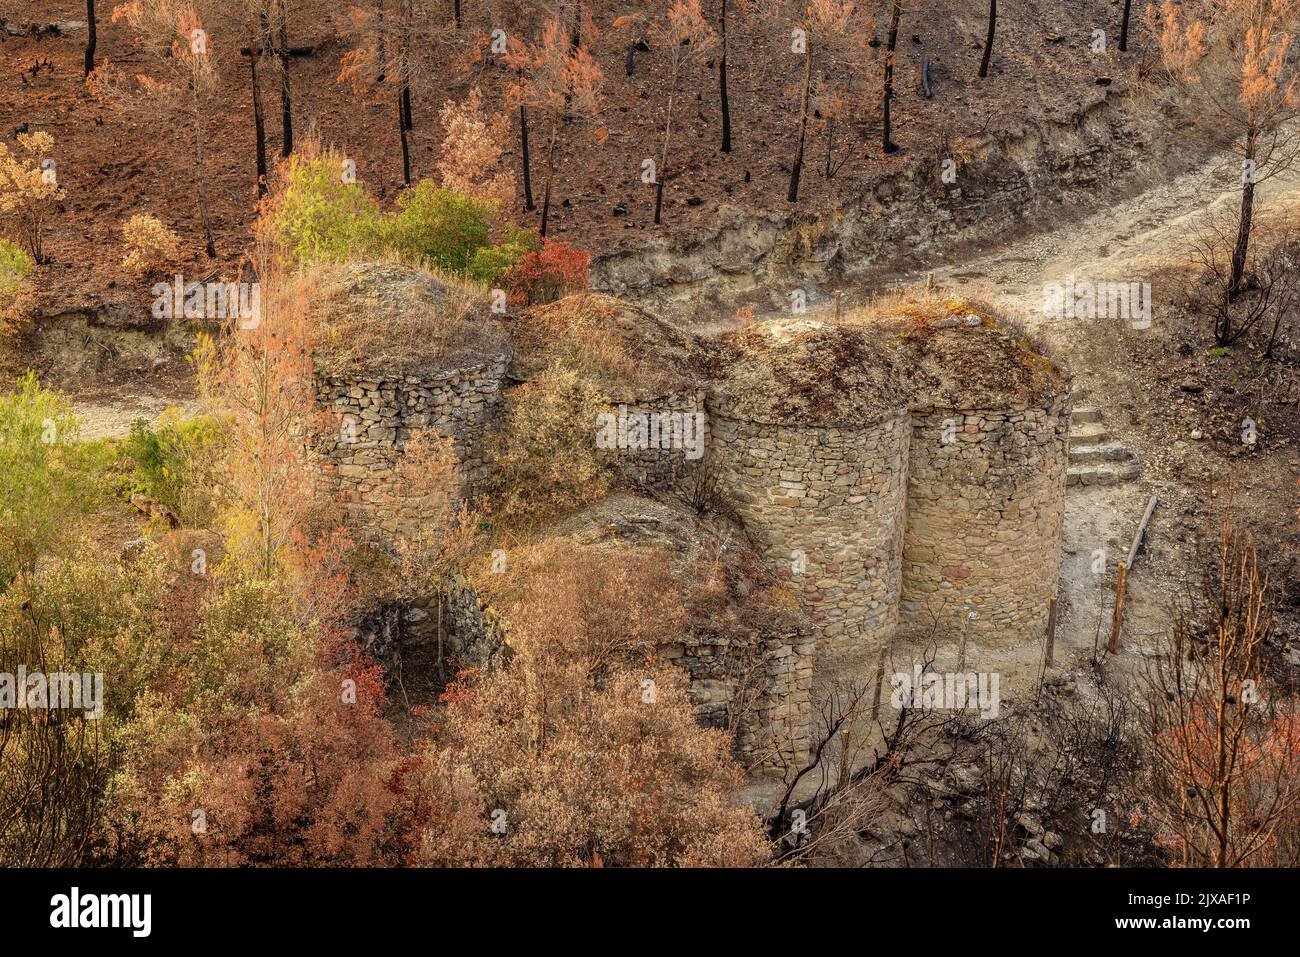 Tubs (Zinken auf katalanisch) und das Flequer-Tal nach dem Brand der Pont de Vilomara von 2022 im Naturpark Sant Llorenç del Munt i l'Obac Katalonien Spanien Stockfoto